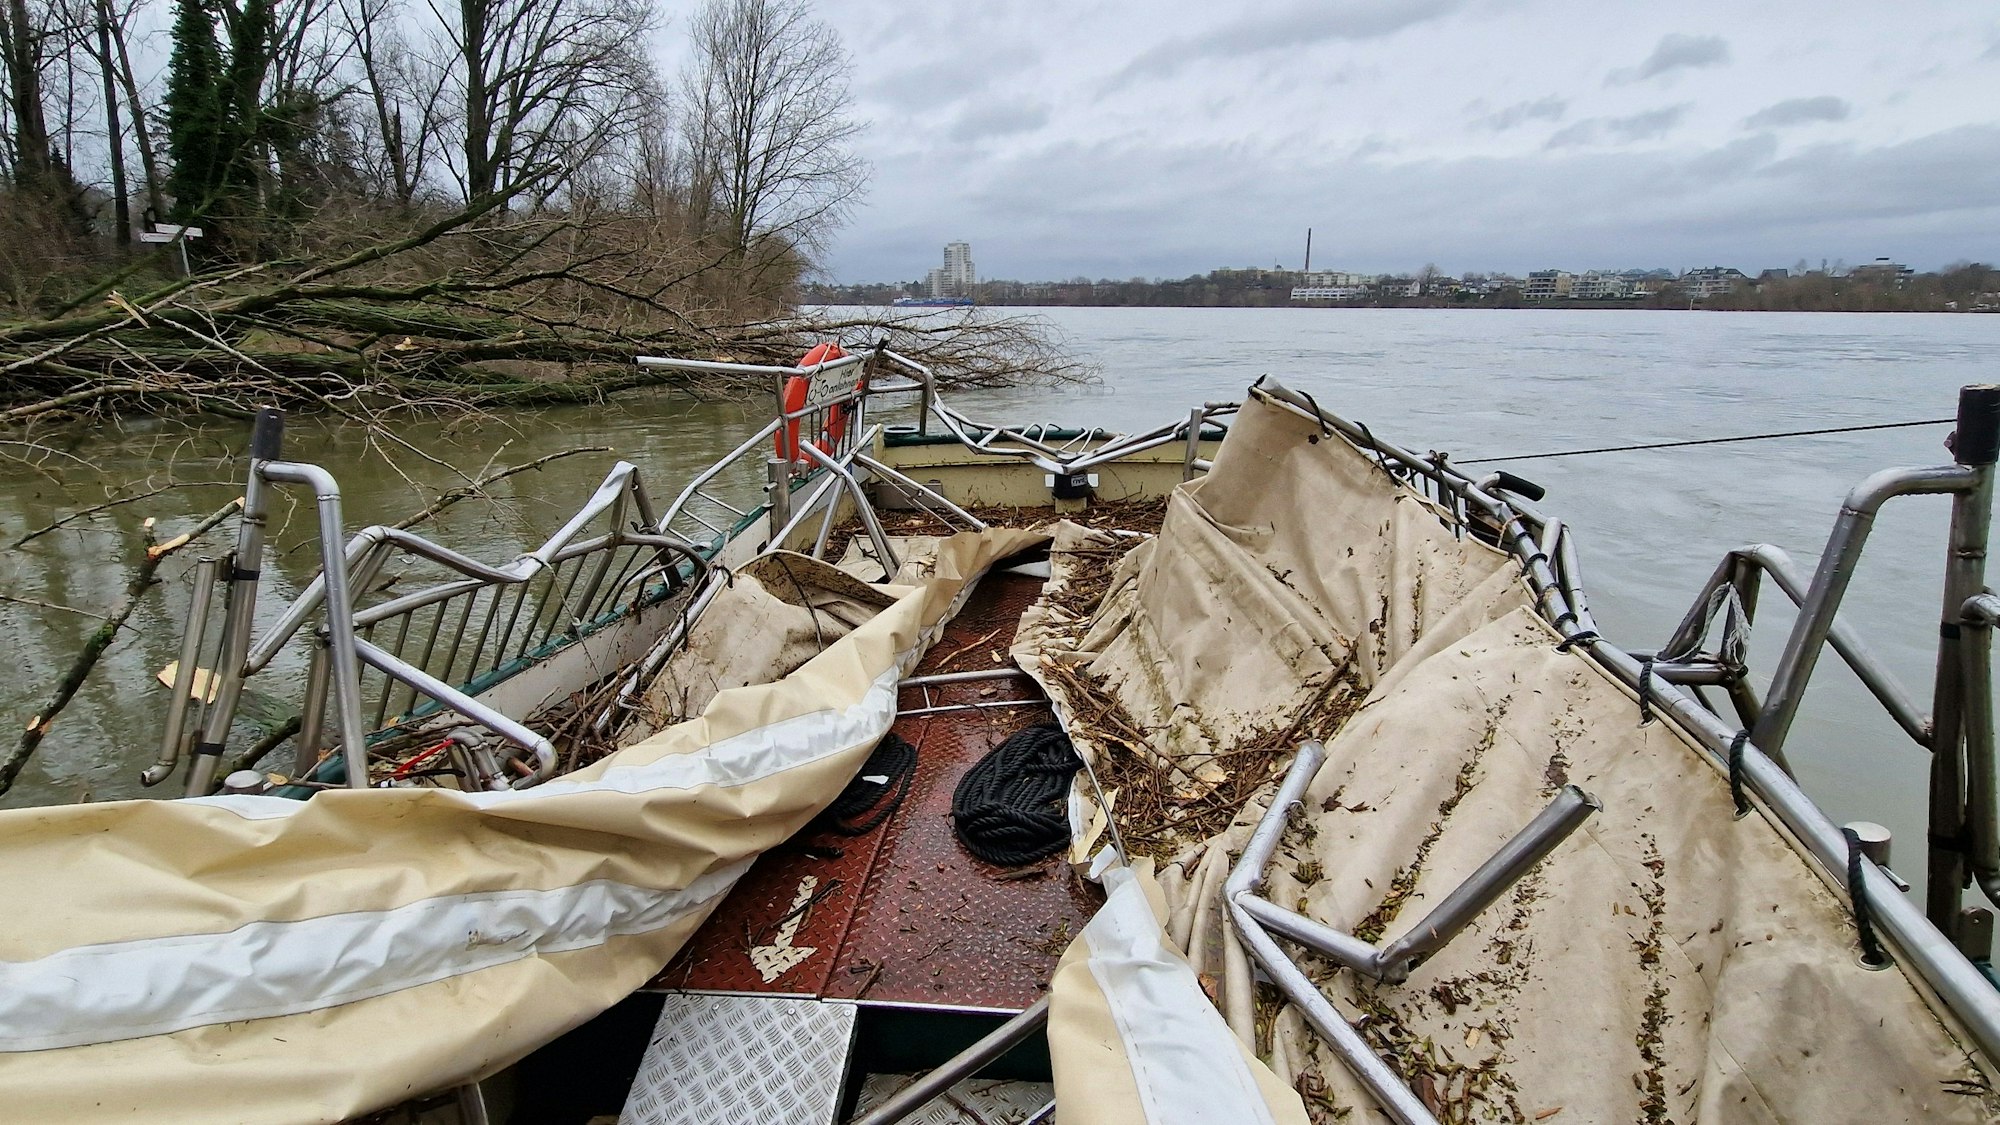 Das Dach der Fähre ist zerstört, die metallene Reling verbogen, am Ufer liegen umgeknickte Bäume halb im Wasser.